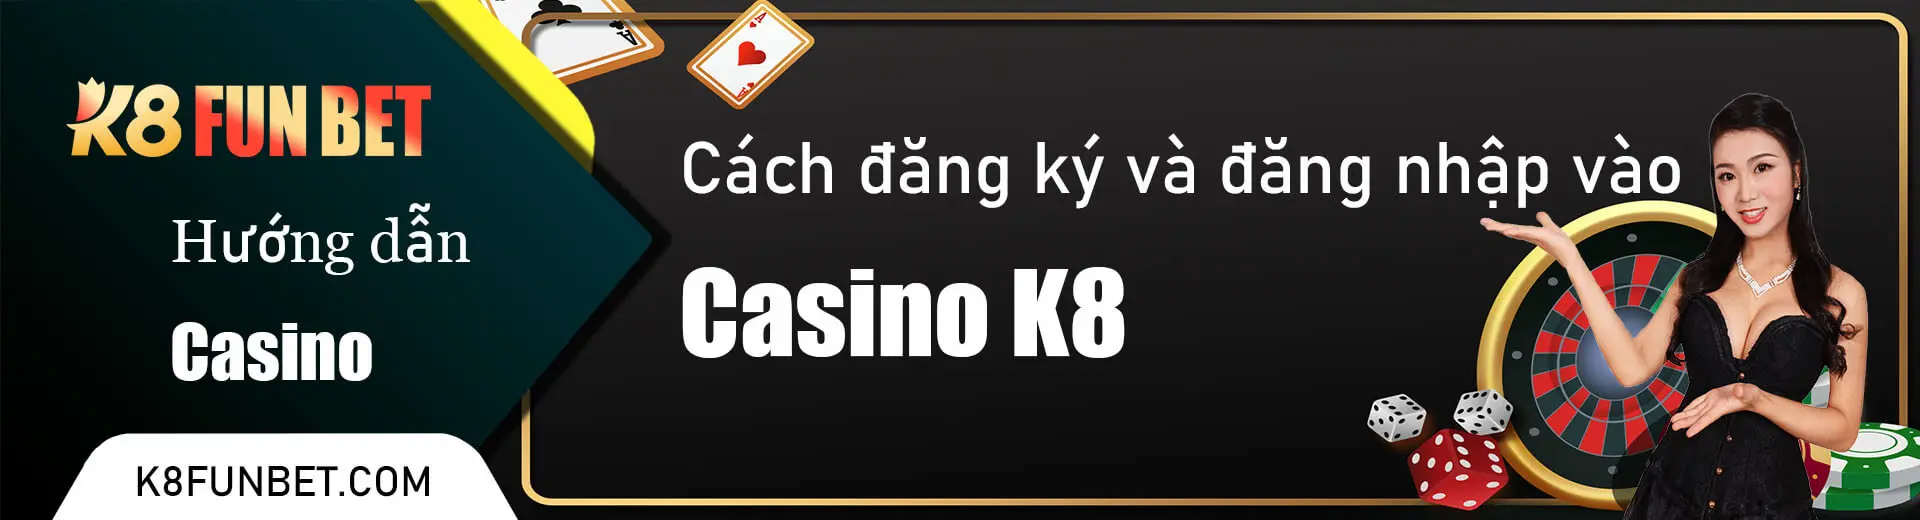 Cách đăng ký và đăng nhập vào Casino k8VN